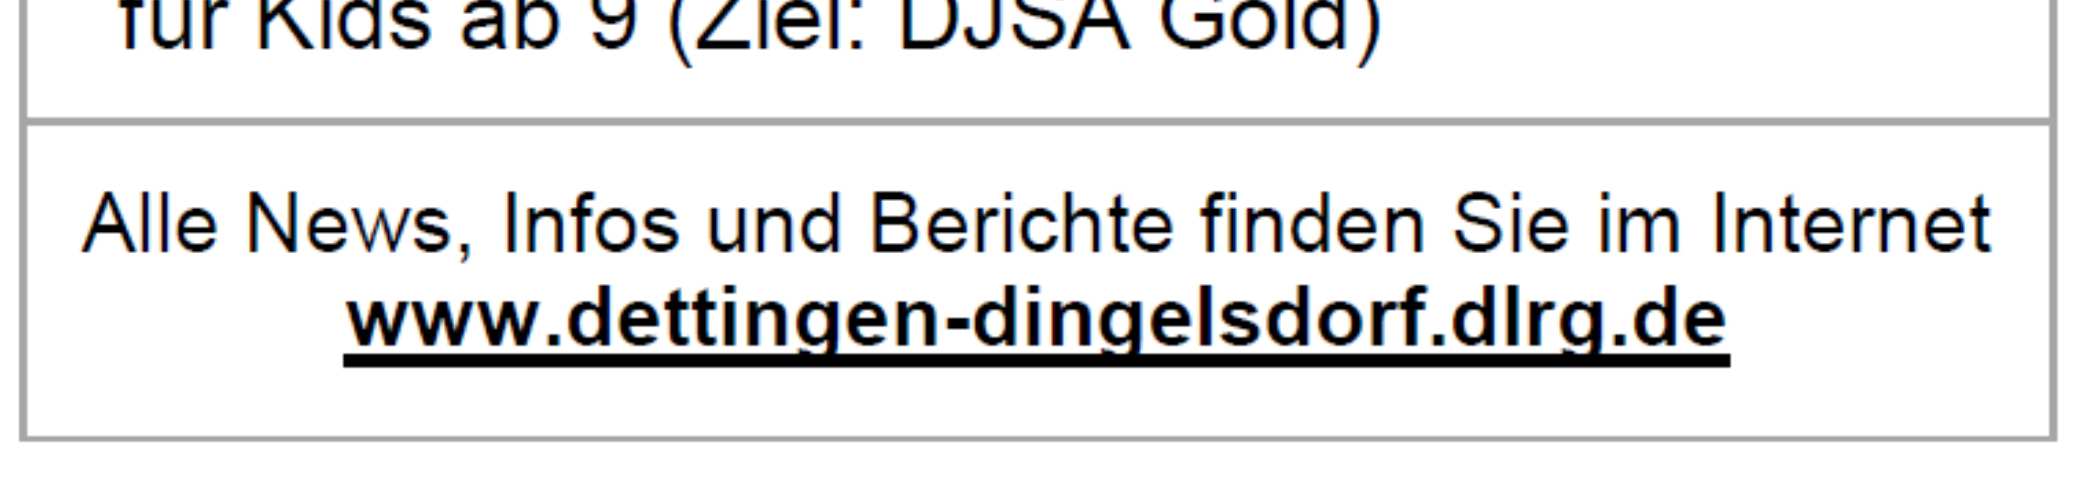 Mitteilungsblatt Dettingen-Wallhausen Freitag, 19. Dezember2014 Seite 6 Am 4.